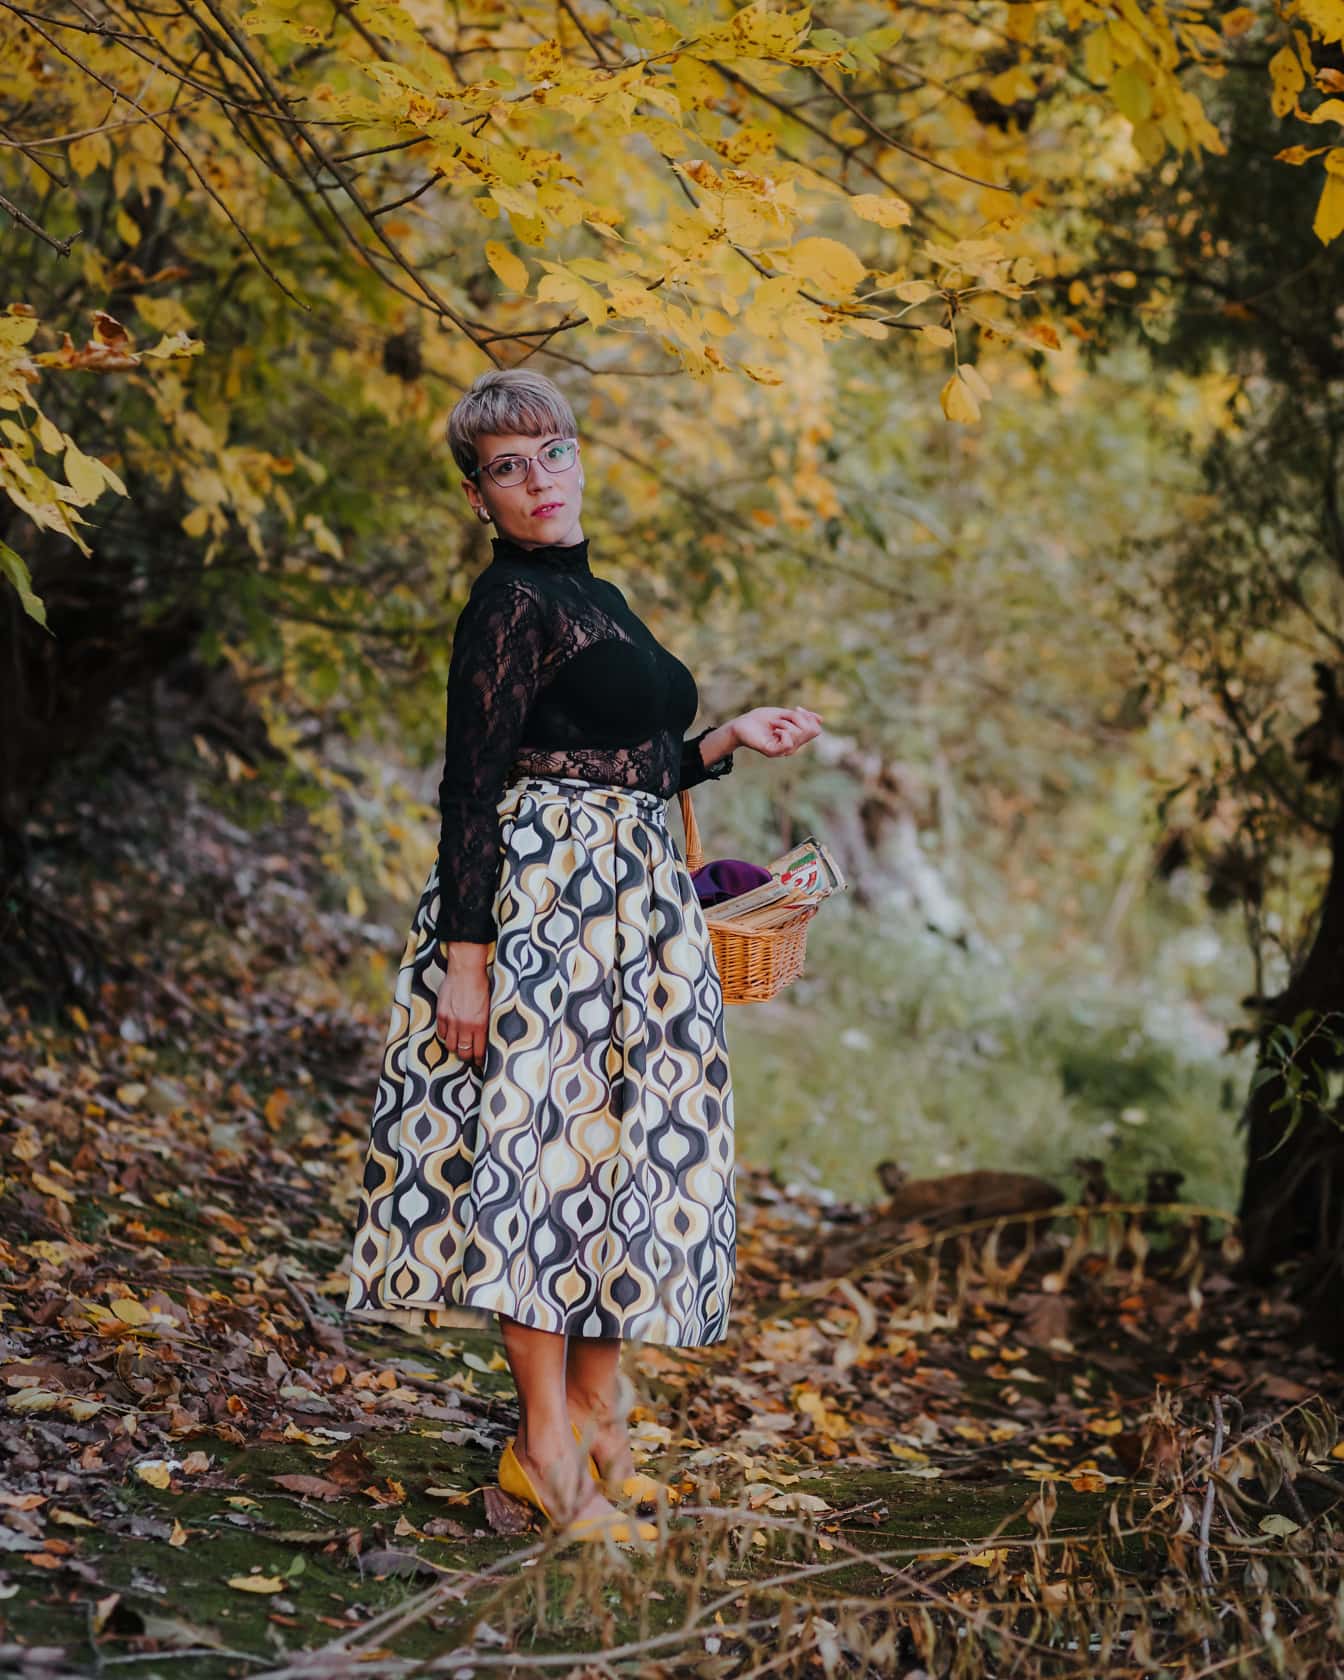 Cô gái xinh đẹp với giỏ đan bằng liễu gai trong rừng mùa thu